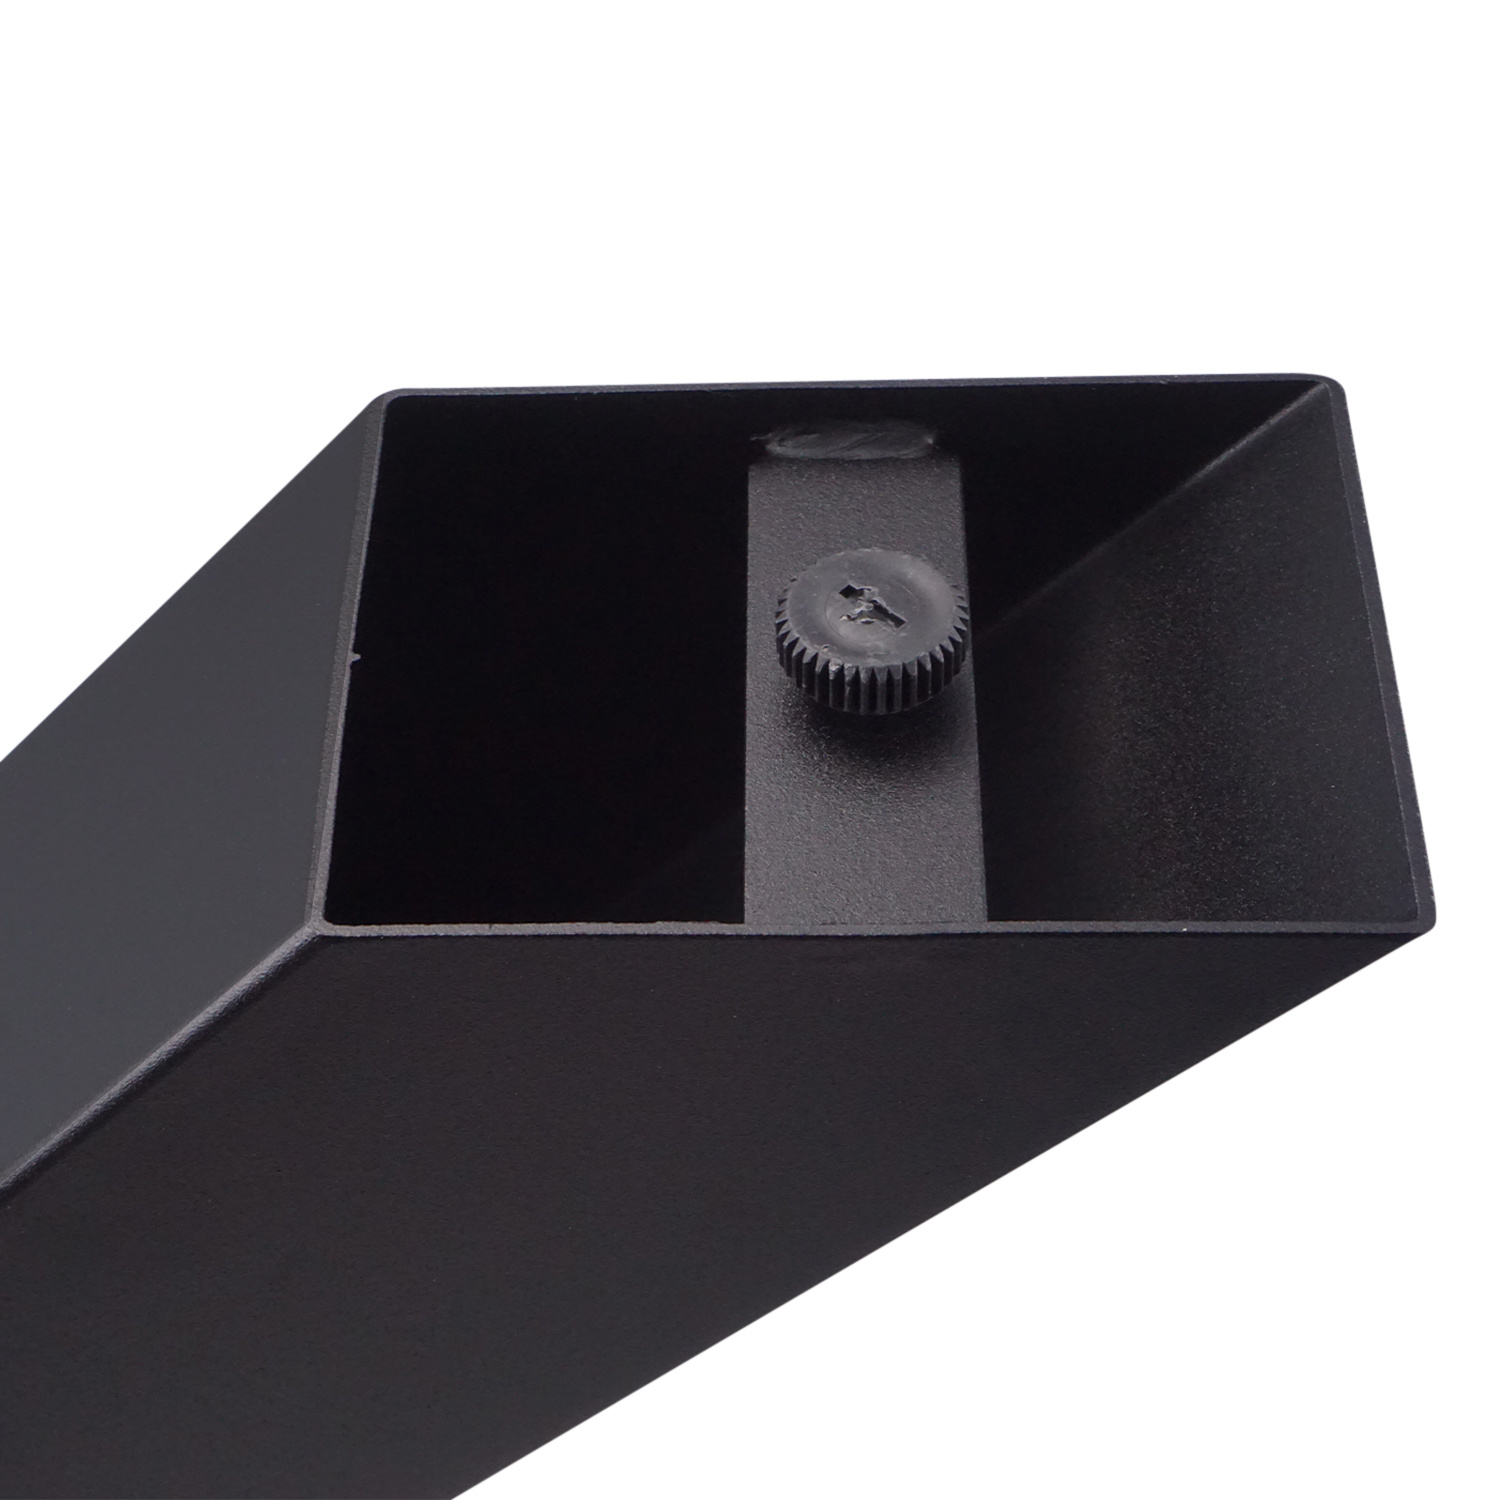  Tischbeine X Metall SET (2 Stück) - 10x10 cm - 78 cm breit - 72 cm hoch - X-form Tischkufen / Tischgestell beschichtet - Schwarz, Anthrazit, Weiß